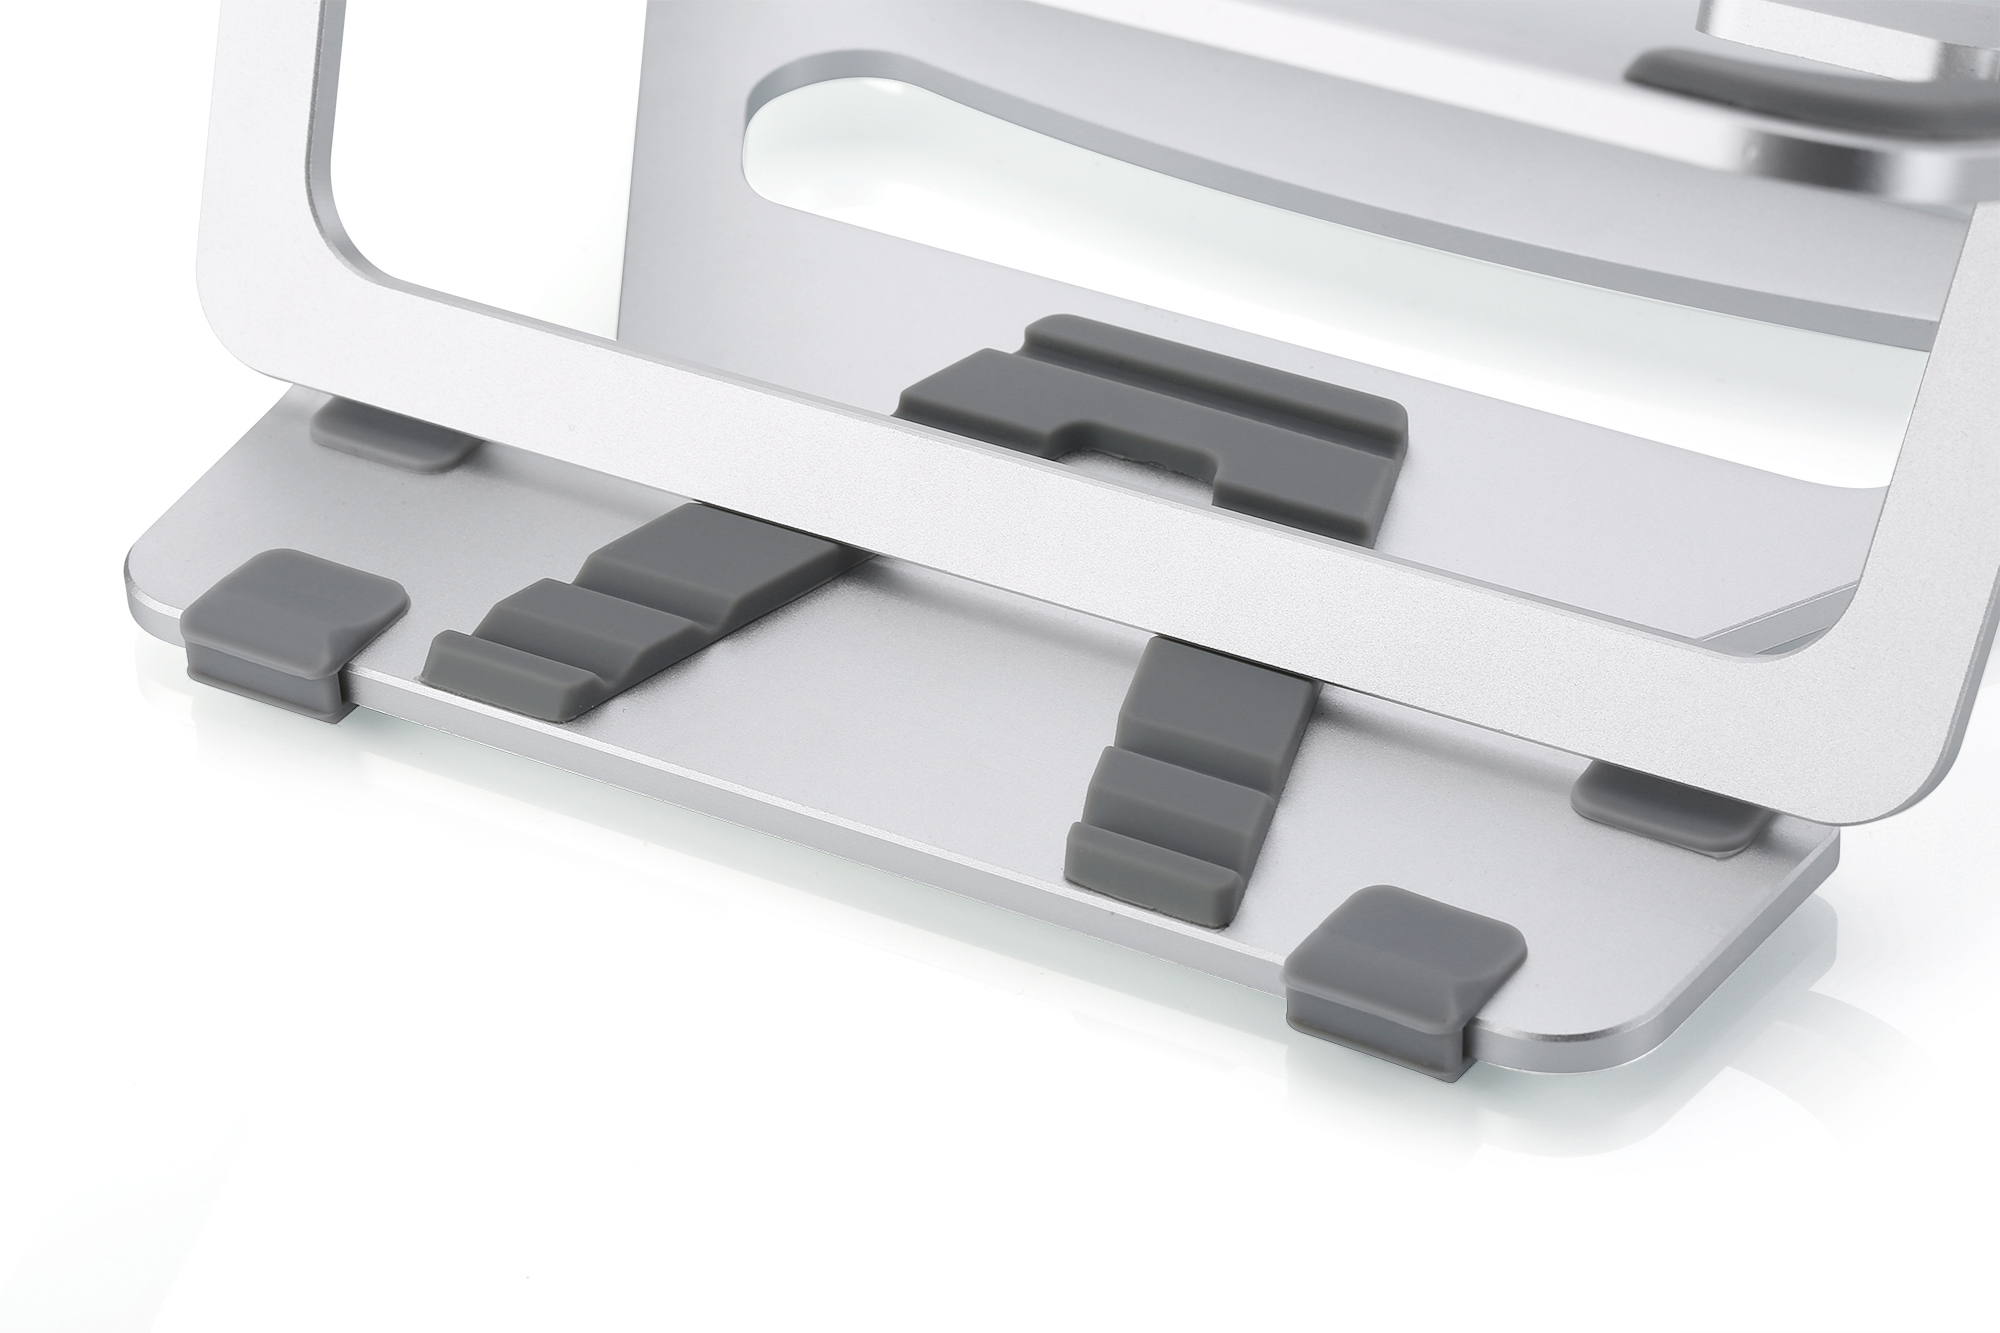 Giá đỡ Aluminum Wiwu S100  cho Macbook laptop 13 inch đên 15.5 inch giúp tản nhiệt thiết kế nhôm nguyên khối - Hàng chính hãng